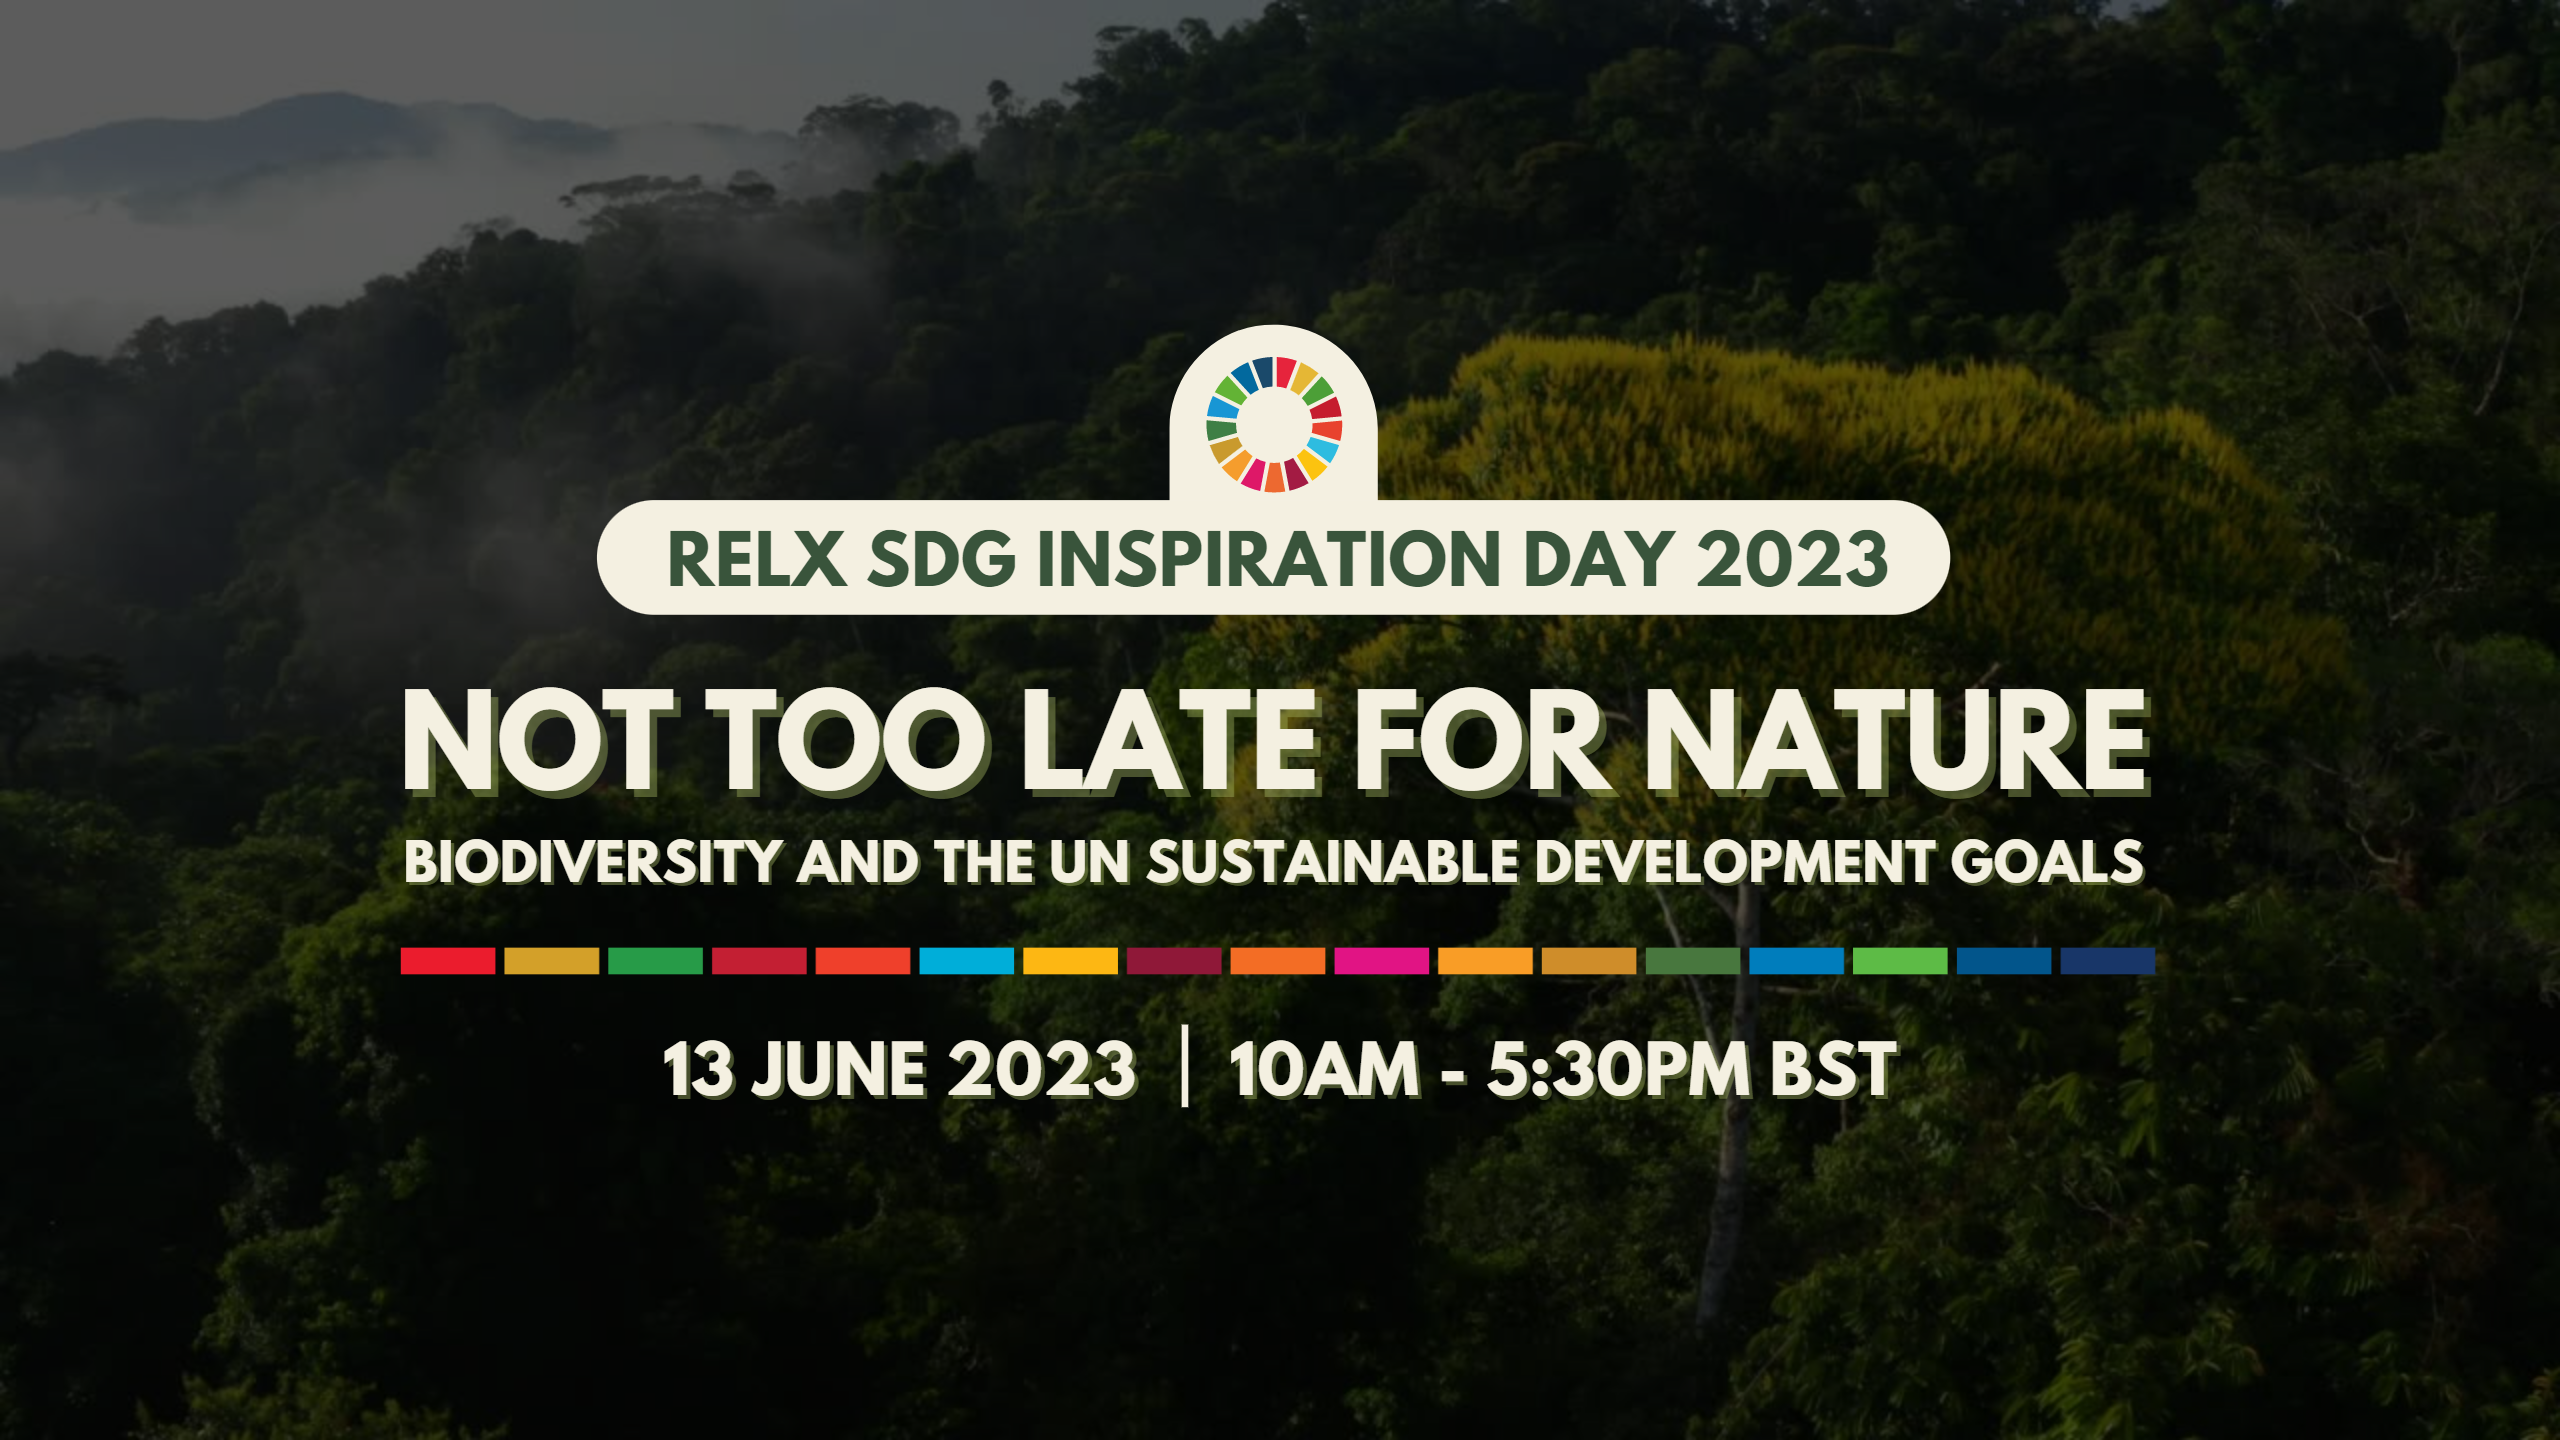 RELX SDG Inspiration Day logo